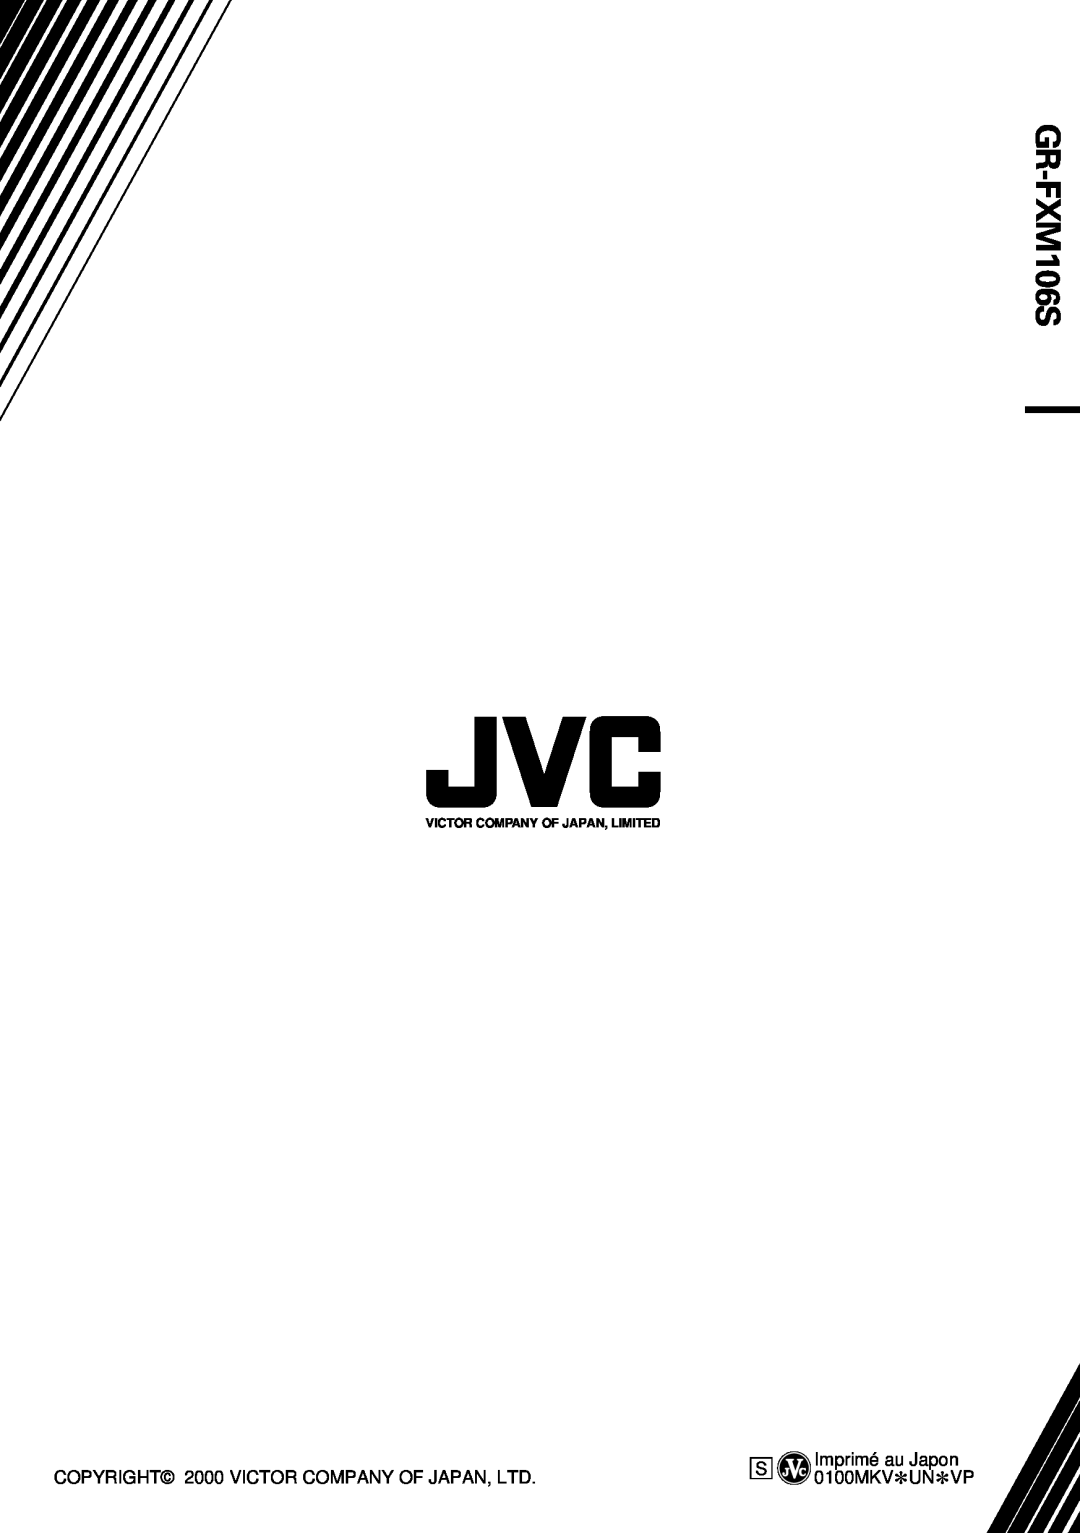 JVC GR-FXM106S manual S Imprimé au Japon 0100MKV*UN*VP, Victor Company Of Japan, Limited 